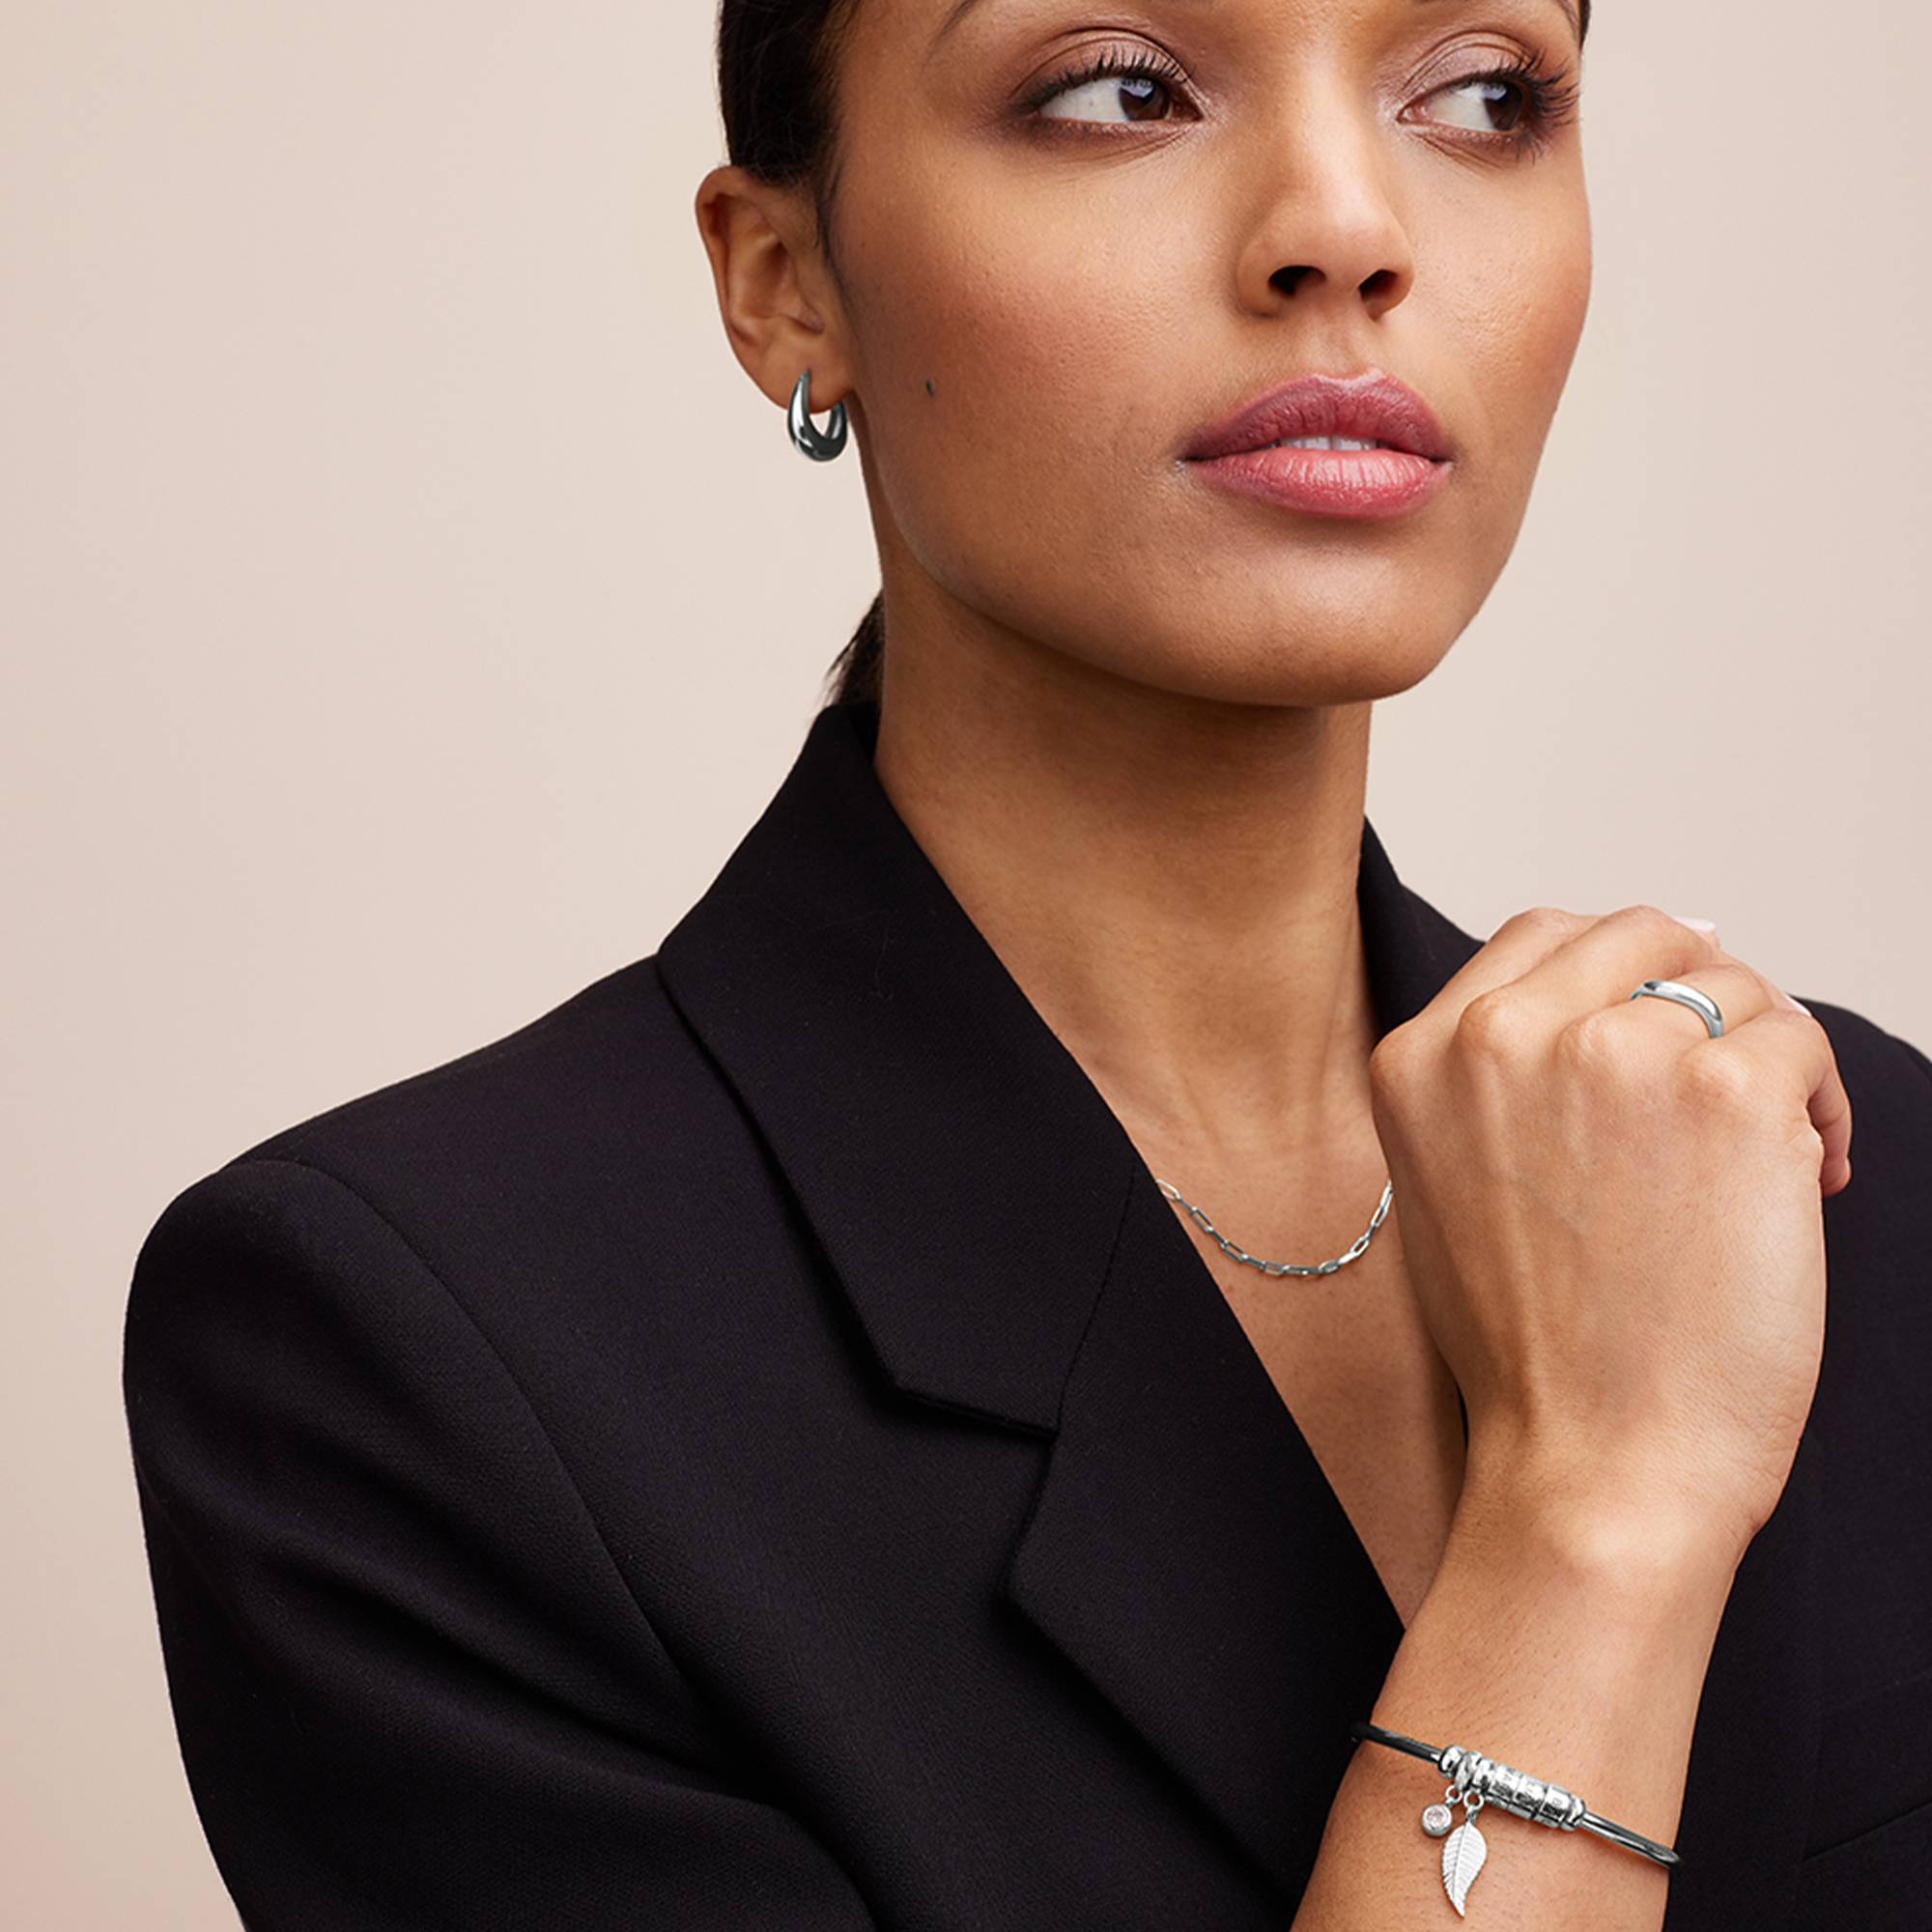 Linda Kreisanhänger-Armreif mit Diamant und silbernen personalisierten Beads-4 Produktfoto